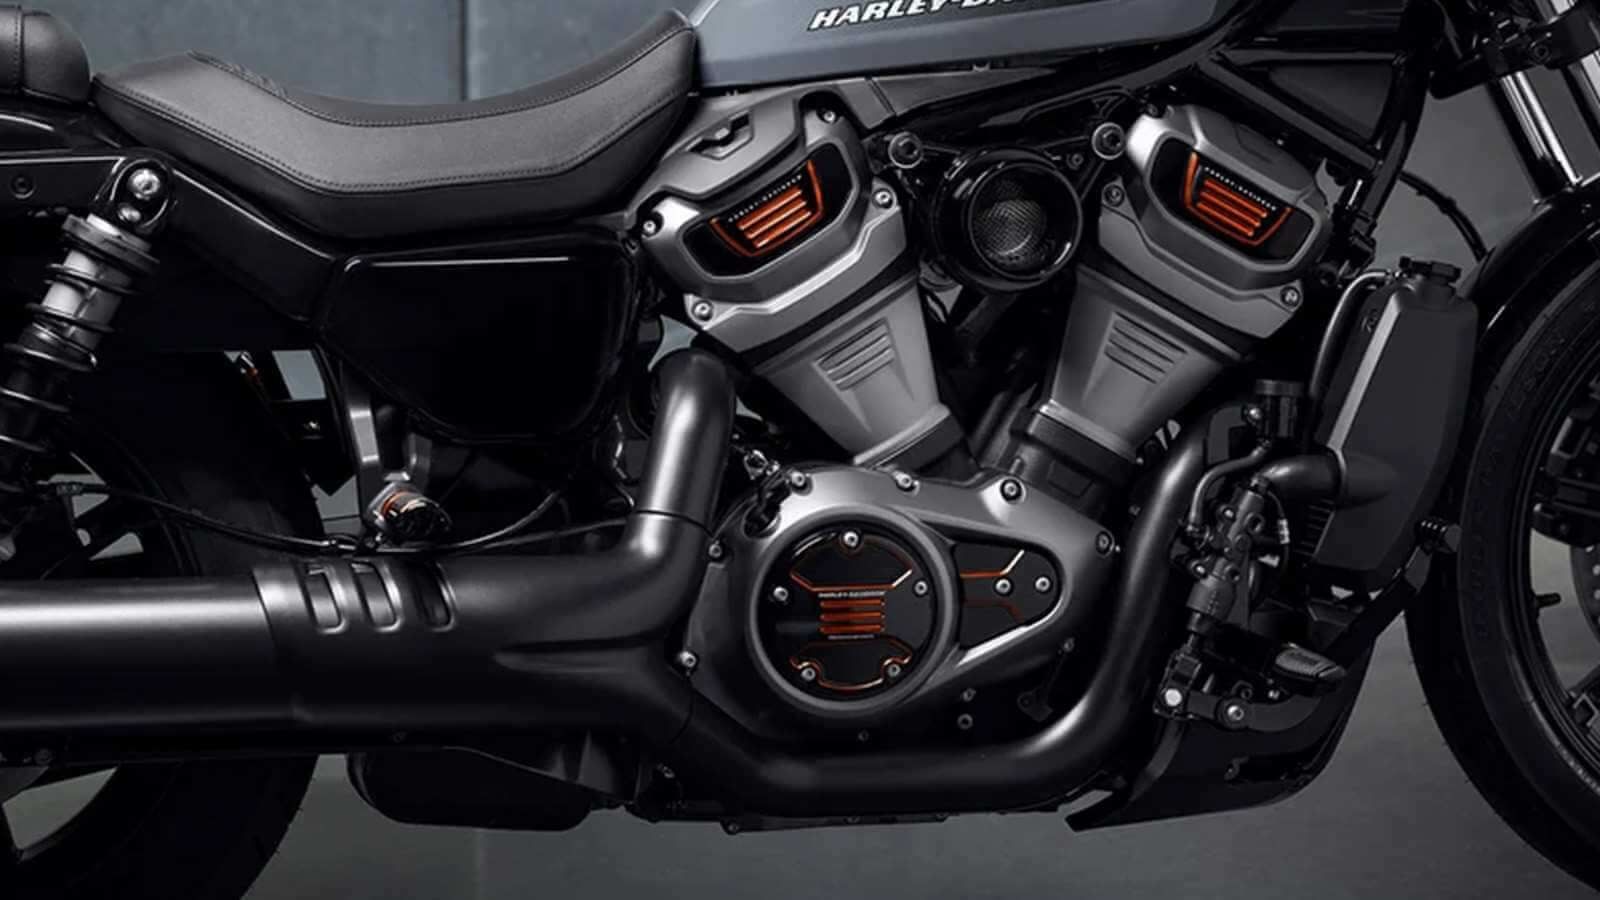  Harley-Davidson Nightster